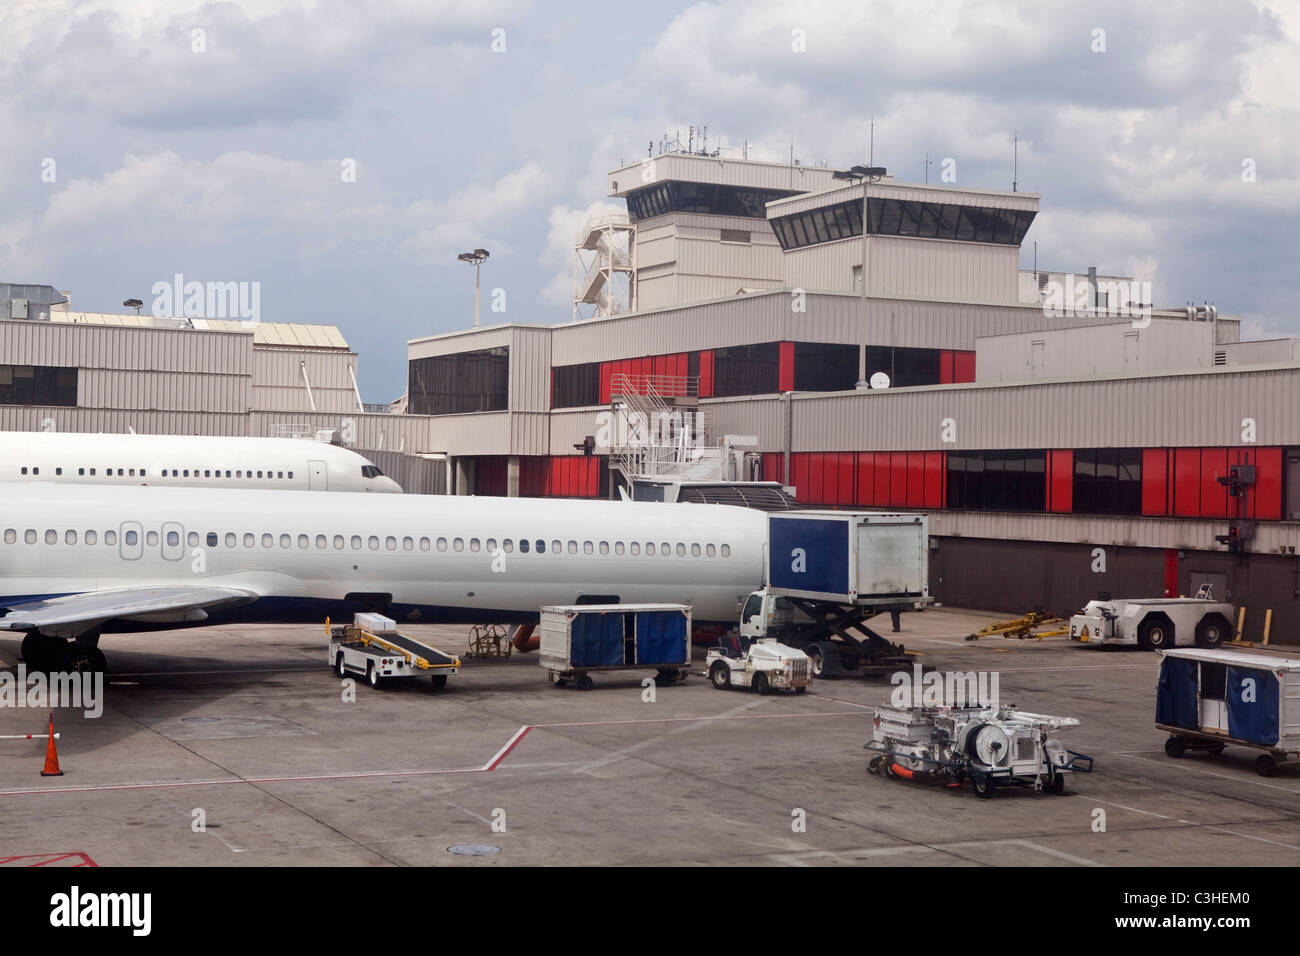 Gran ciudad moderna terminal de aeropuerto, con aviones en las puertas. Foto de stock